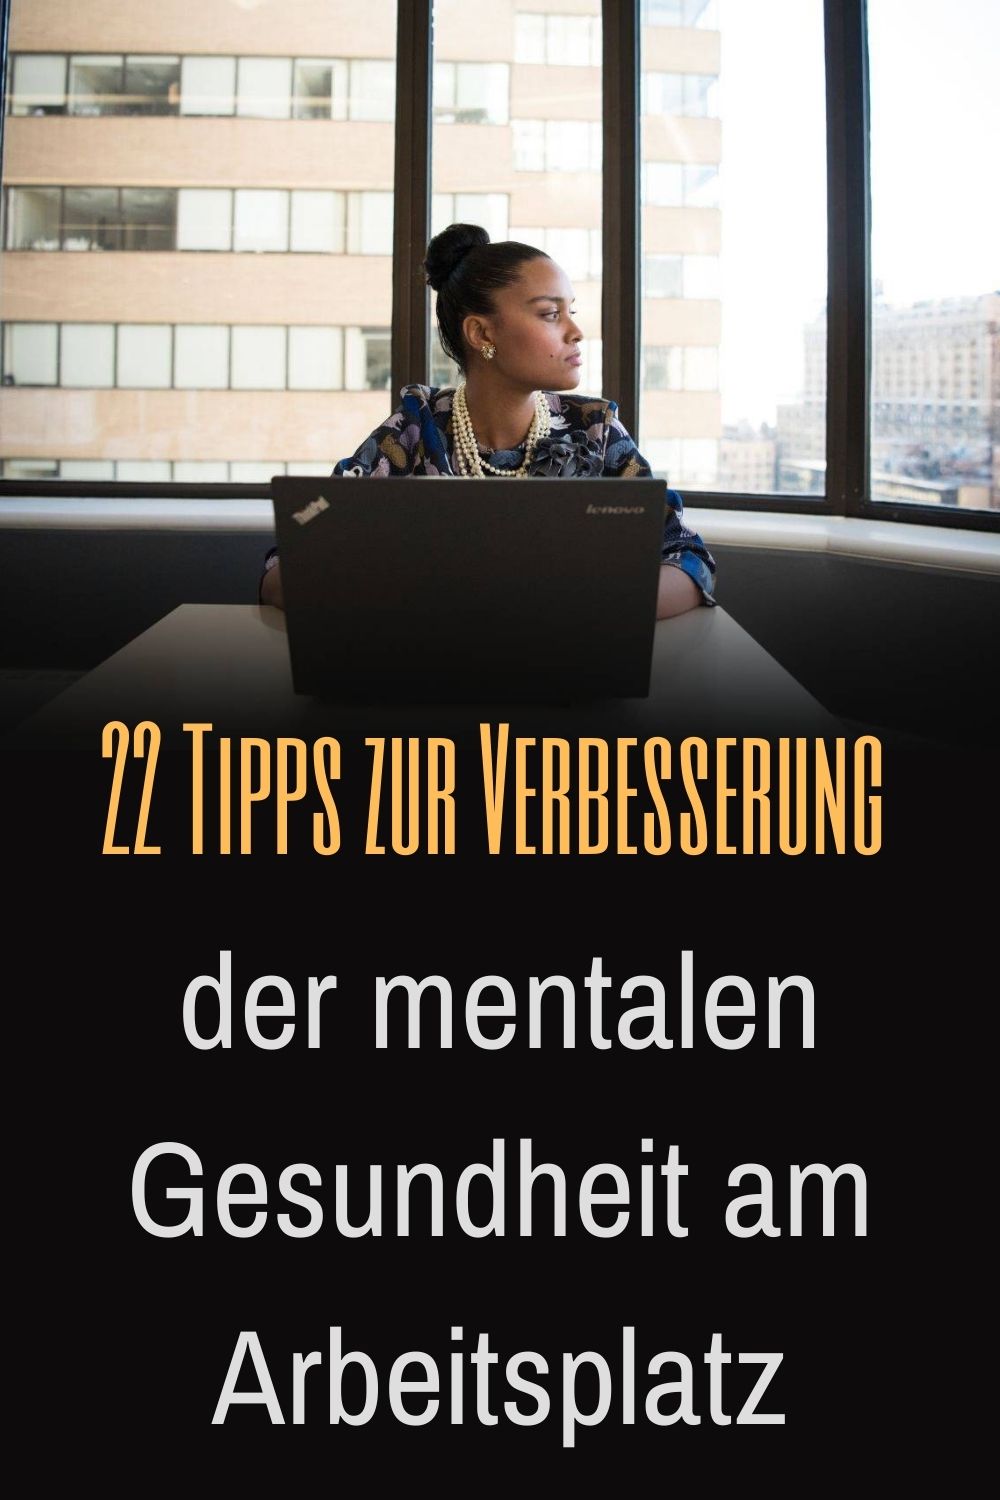 22-Tipps-zur-Verbesserung-der-mentalen-Gesundheit-am-Arbeitsplatz